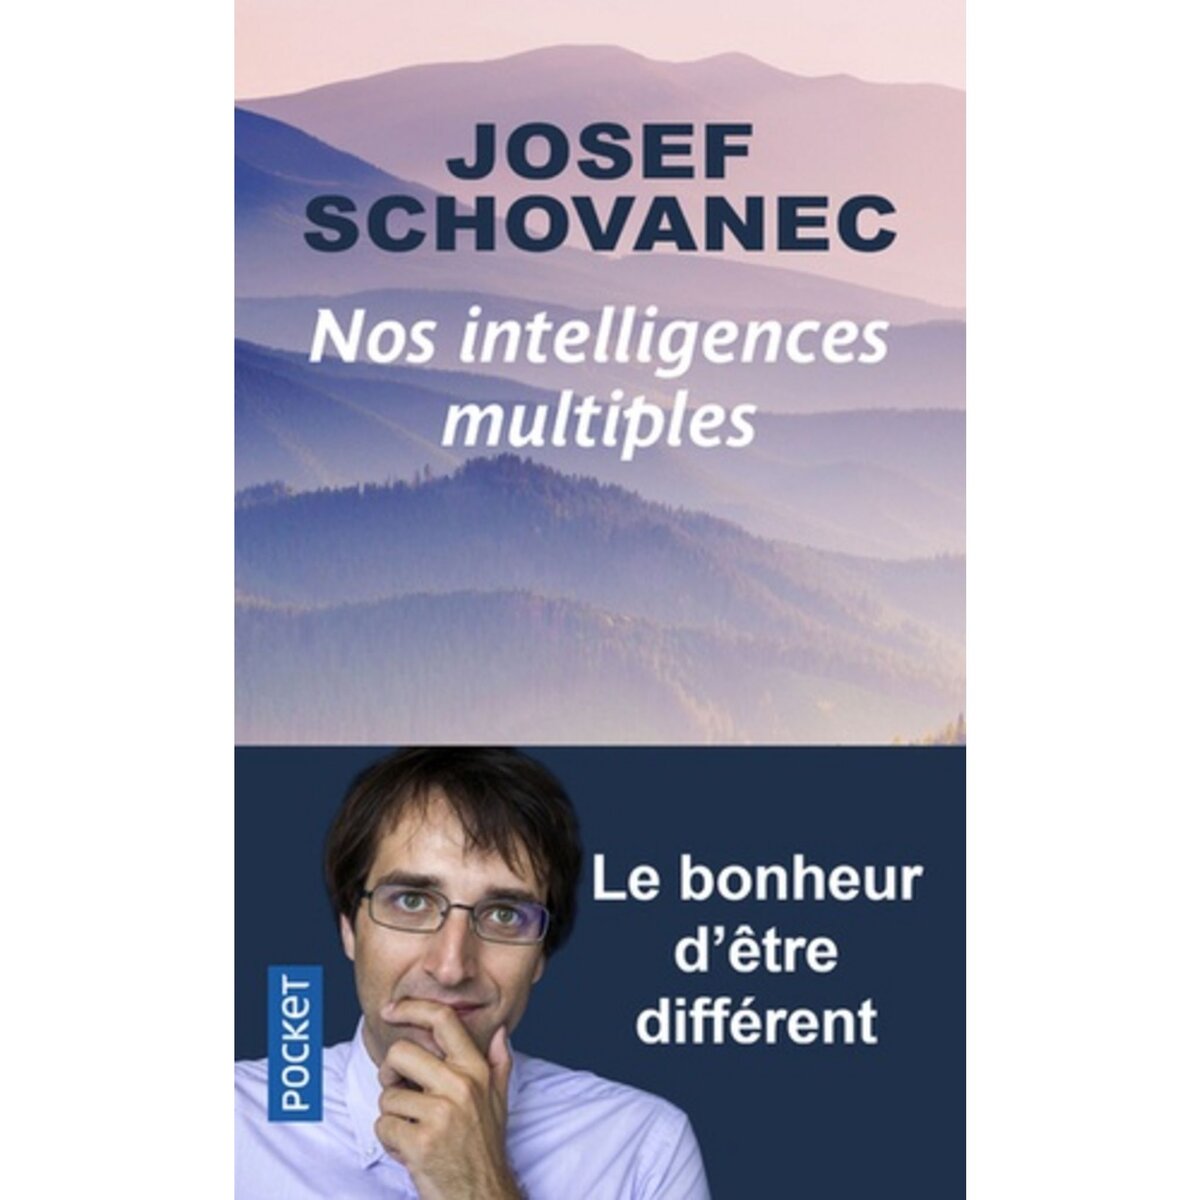  NOS INTELLIGENCES MULTIPLES. LE BONHEUR D'ETRE DIFFERENT, Schovanec Josef